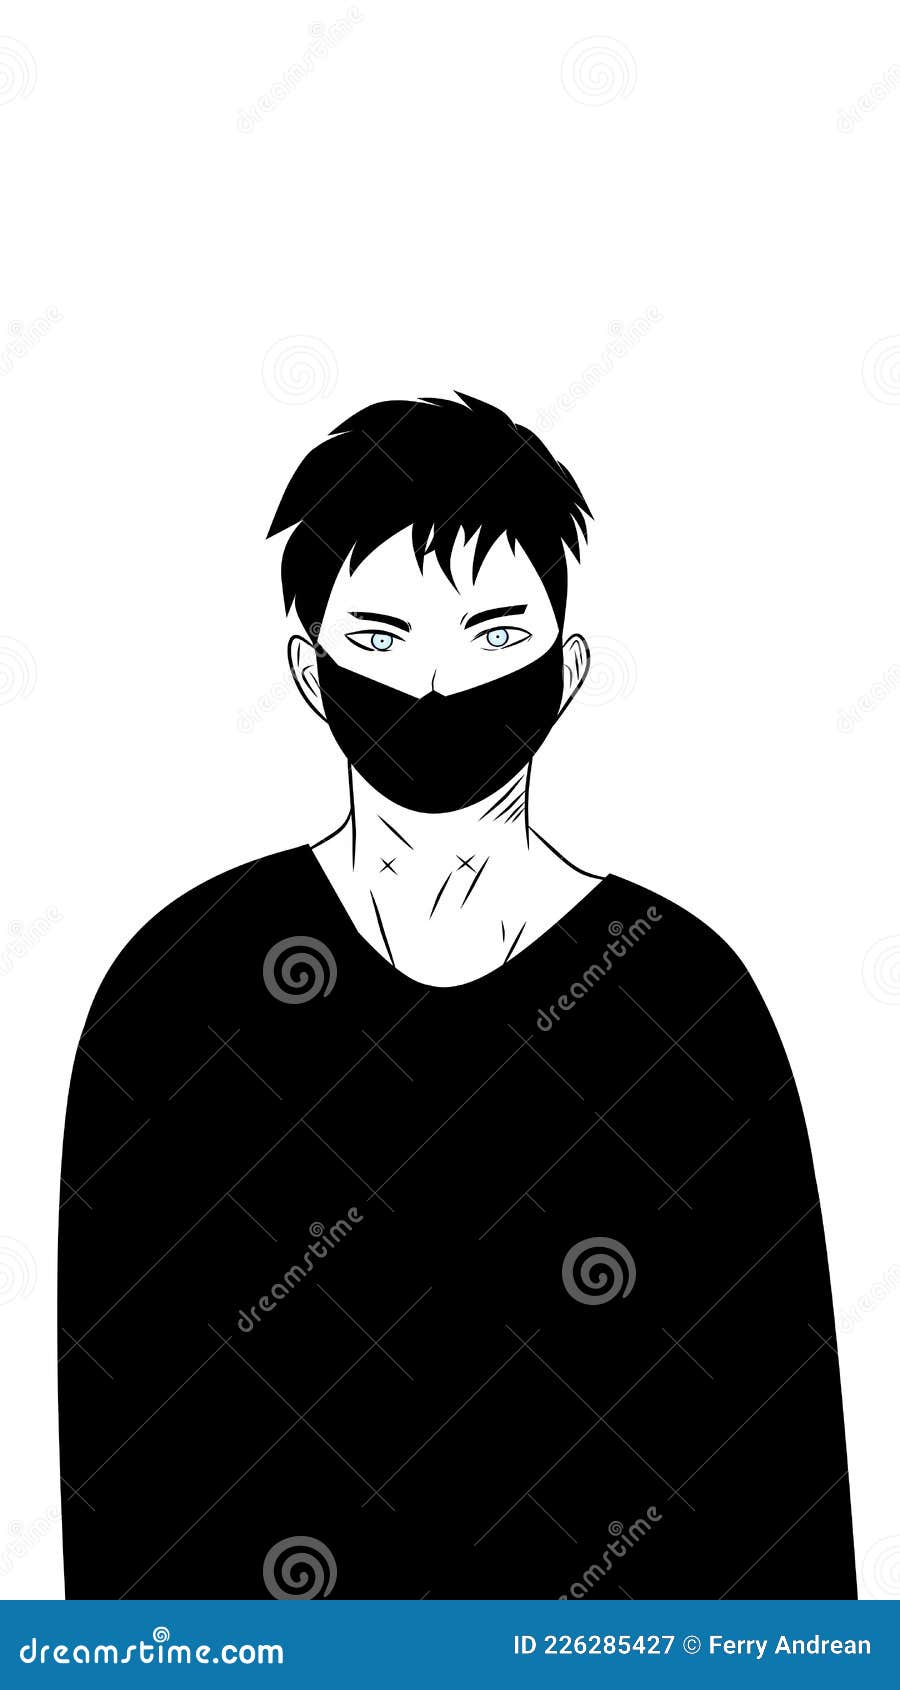 Um triste personagem de anime com um capuz preto.